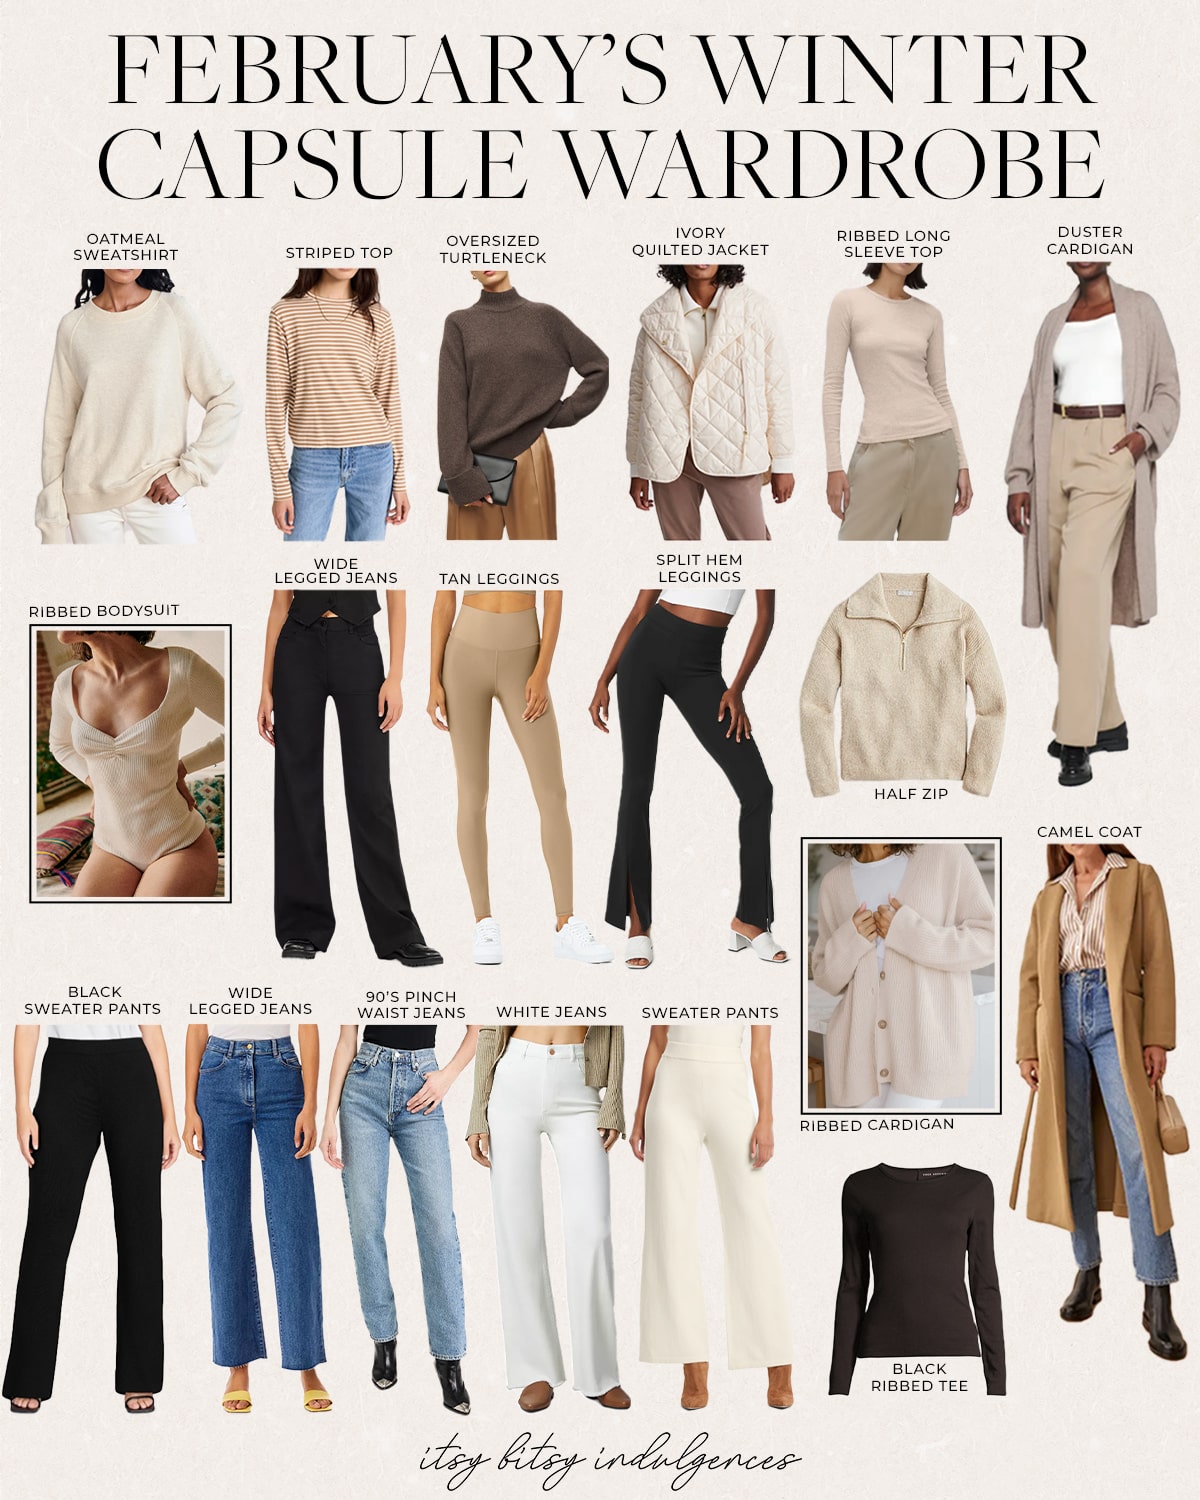 February's Capsule Wardrobe - Itsy Bitsy Indulgences